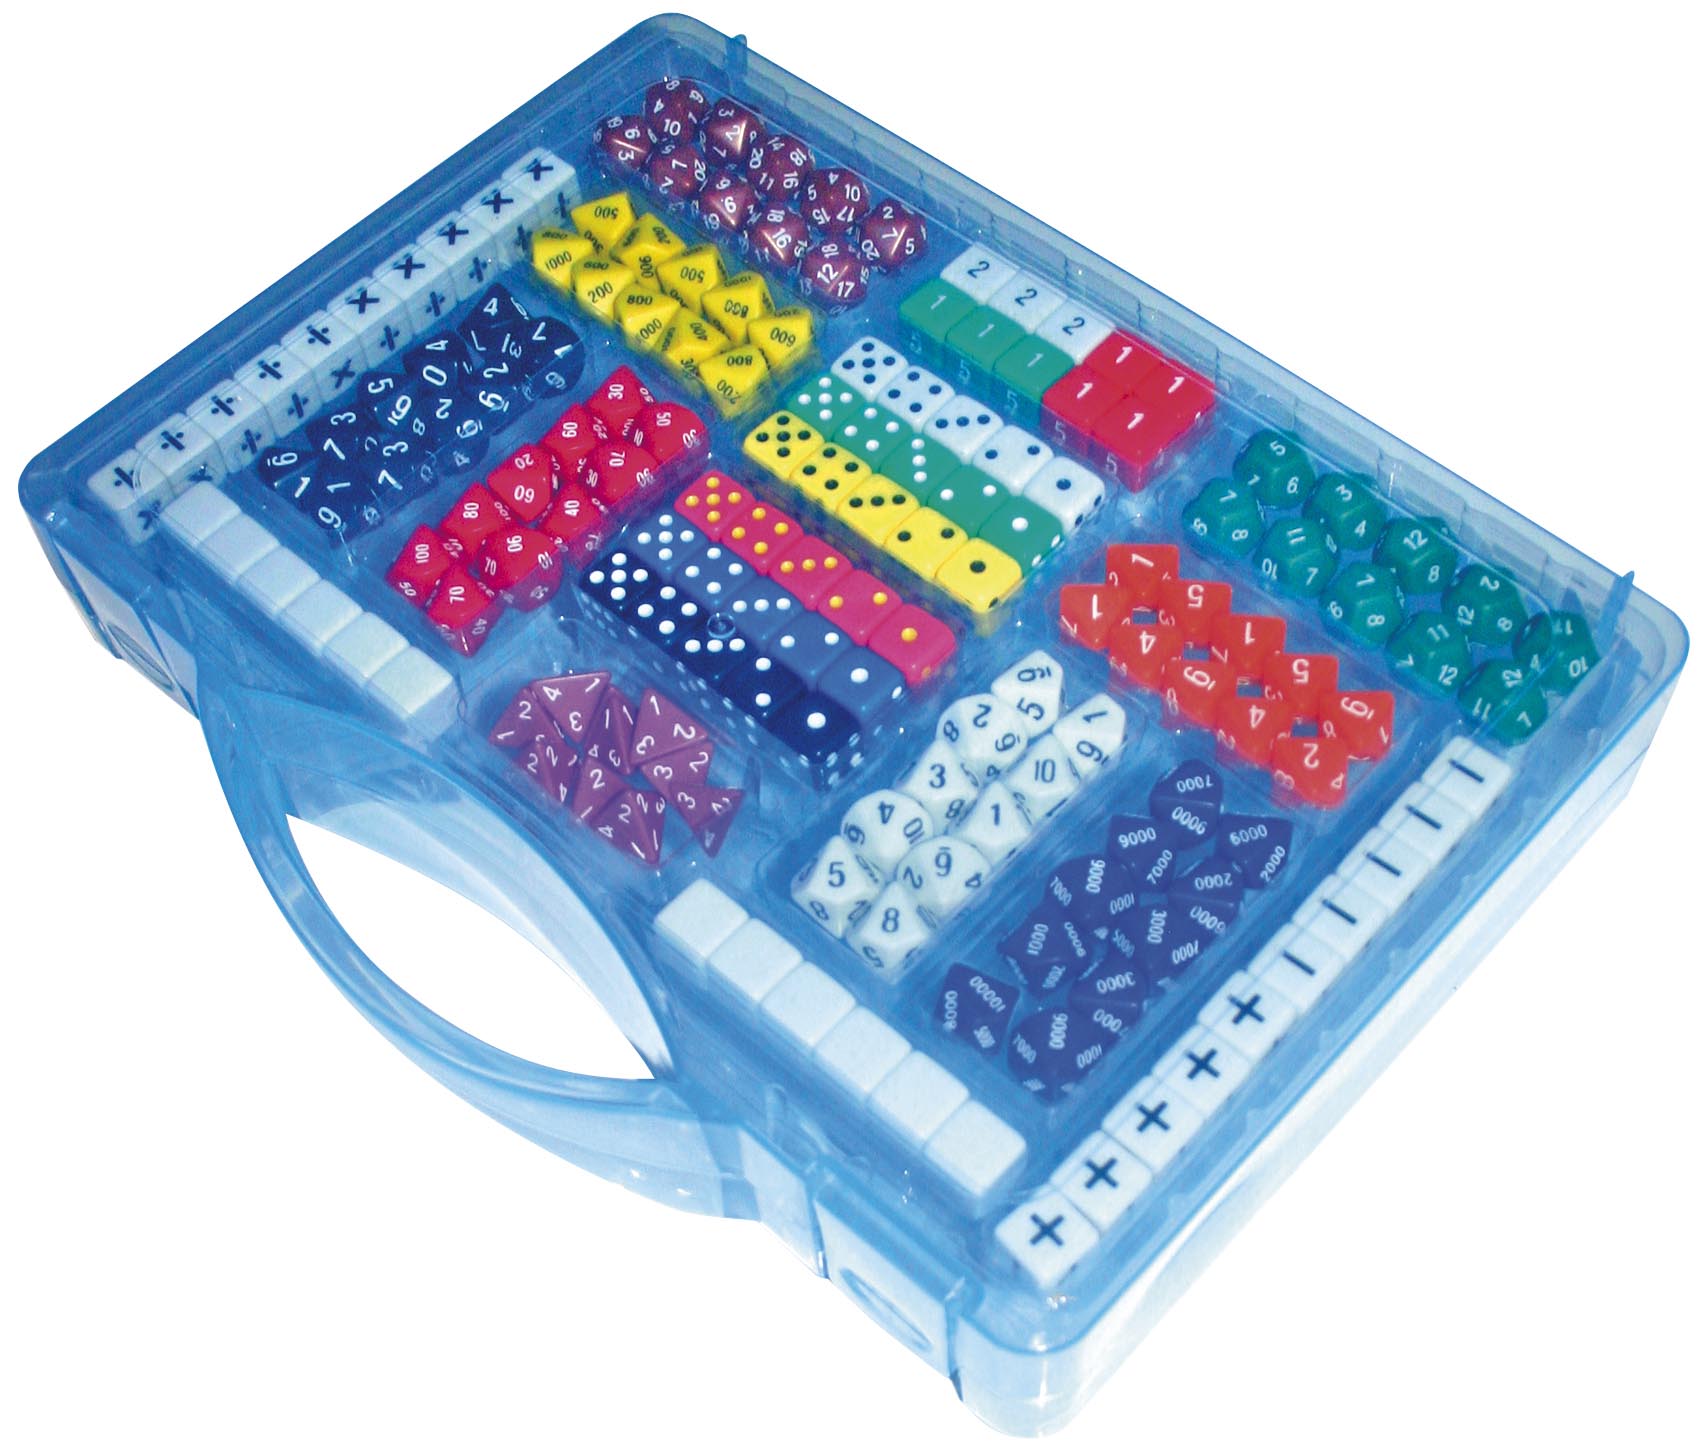  Matematický kufřík - 161 ks kostek pro hry s počty